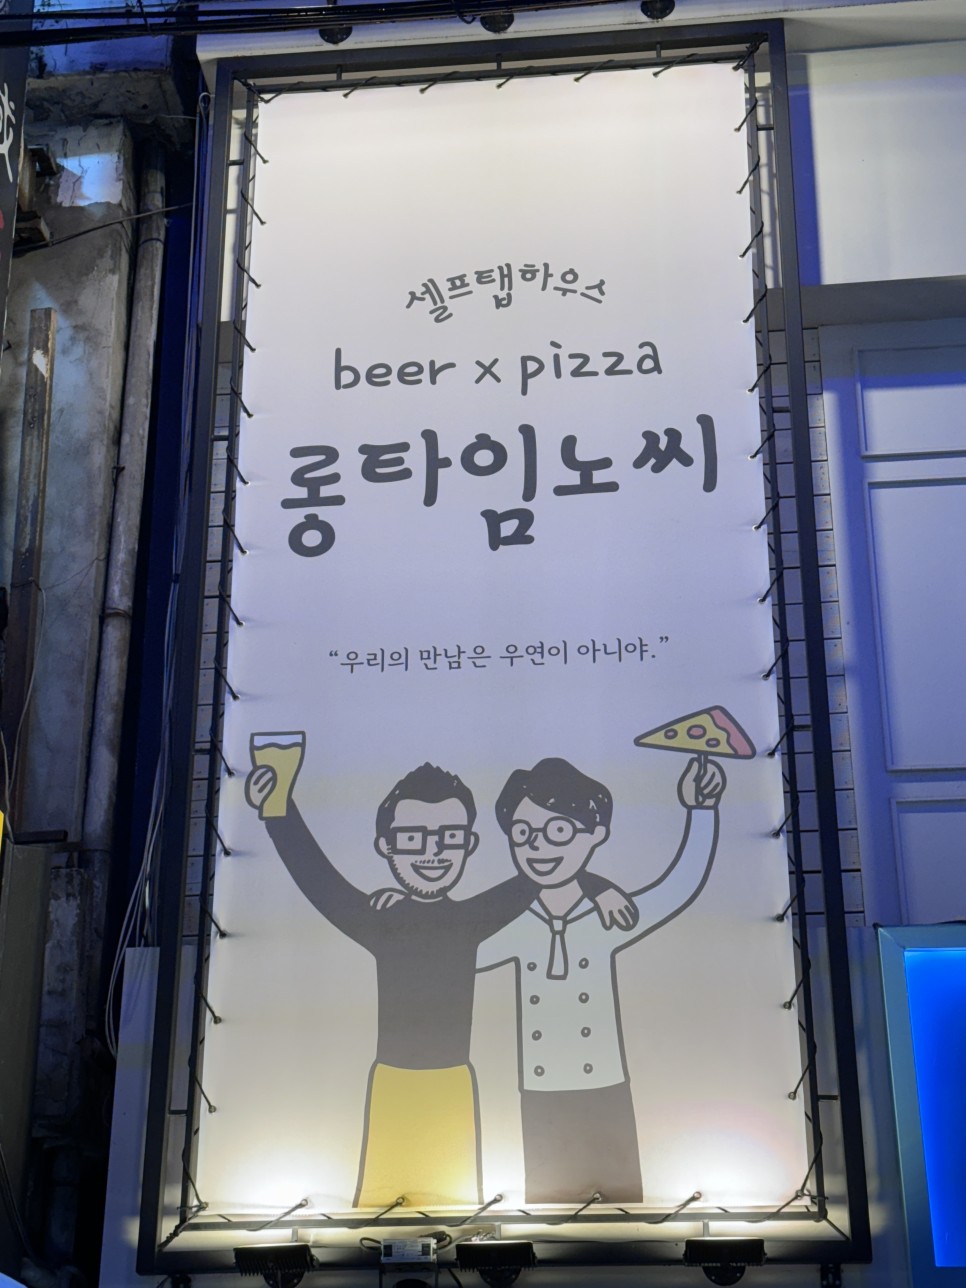 구로디지털단지역 맛집 롱타임 노씨/4번째 재방문하는 피자, 맥주 단골맛집